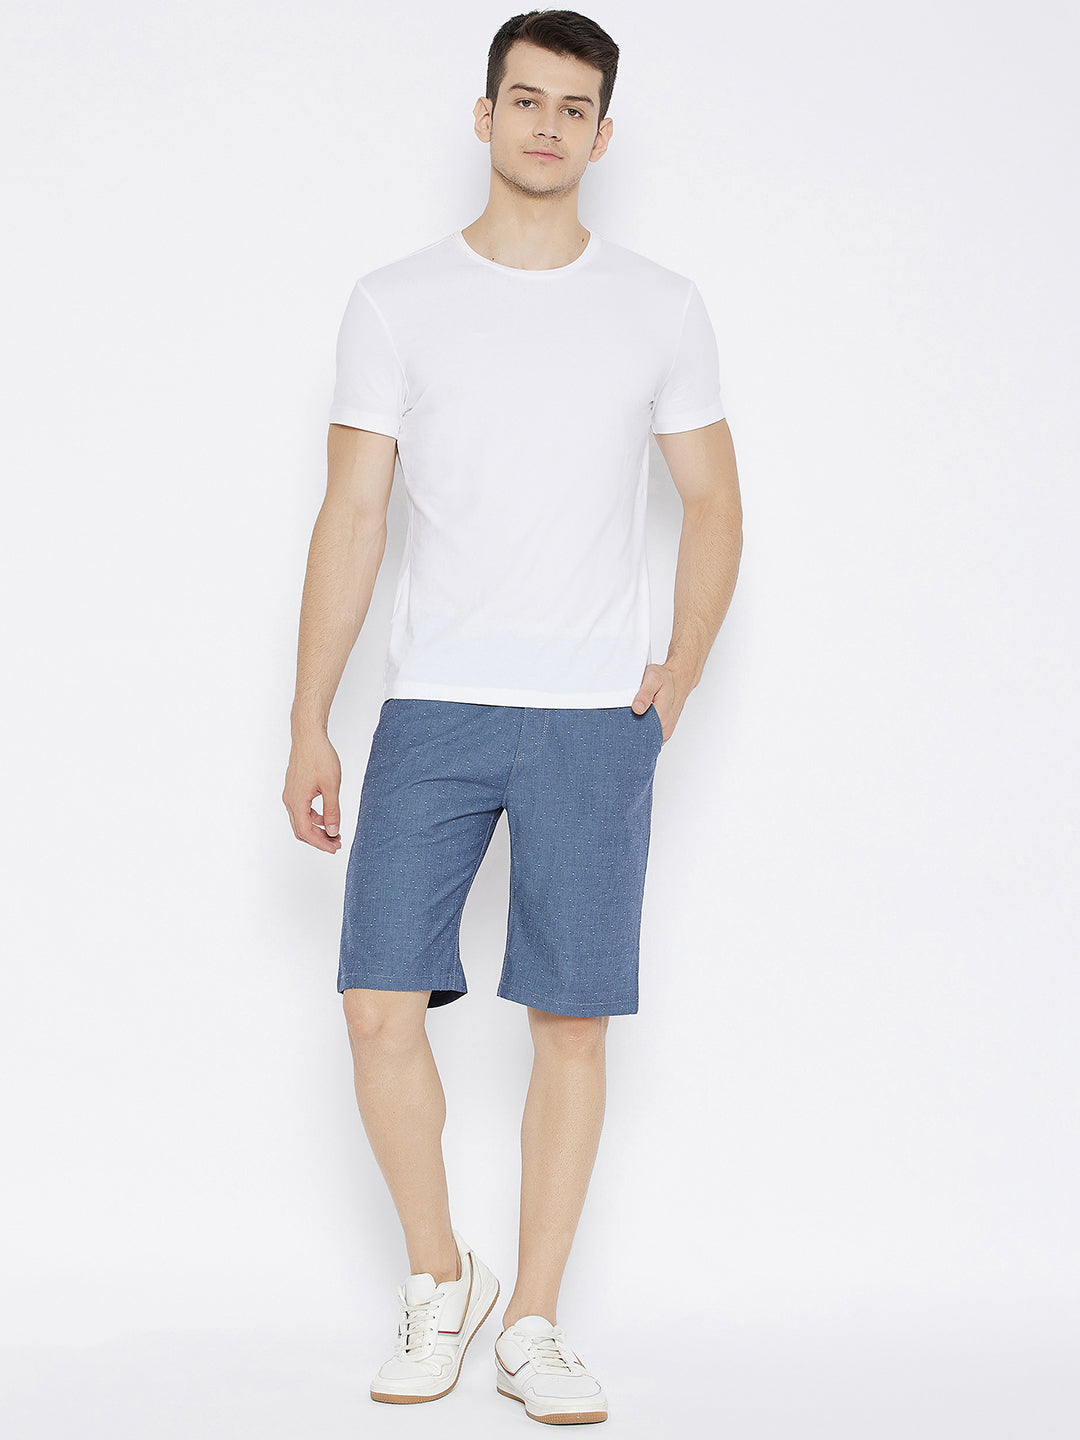 Grey Printed Slim Fit Shorts - Men Shorts